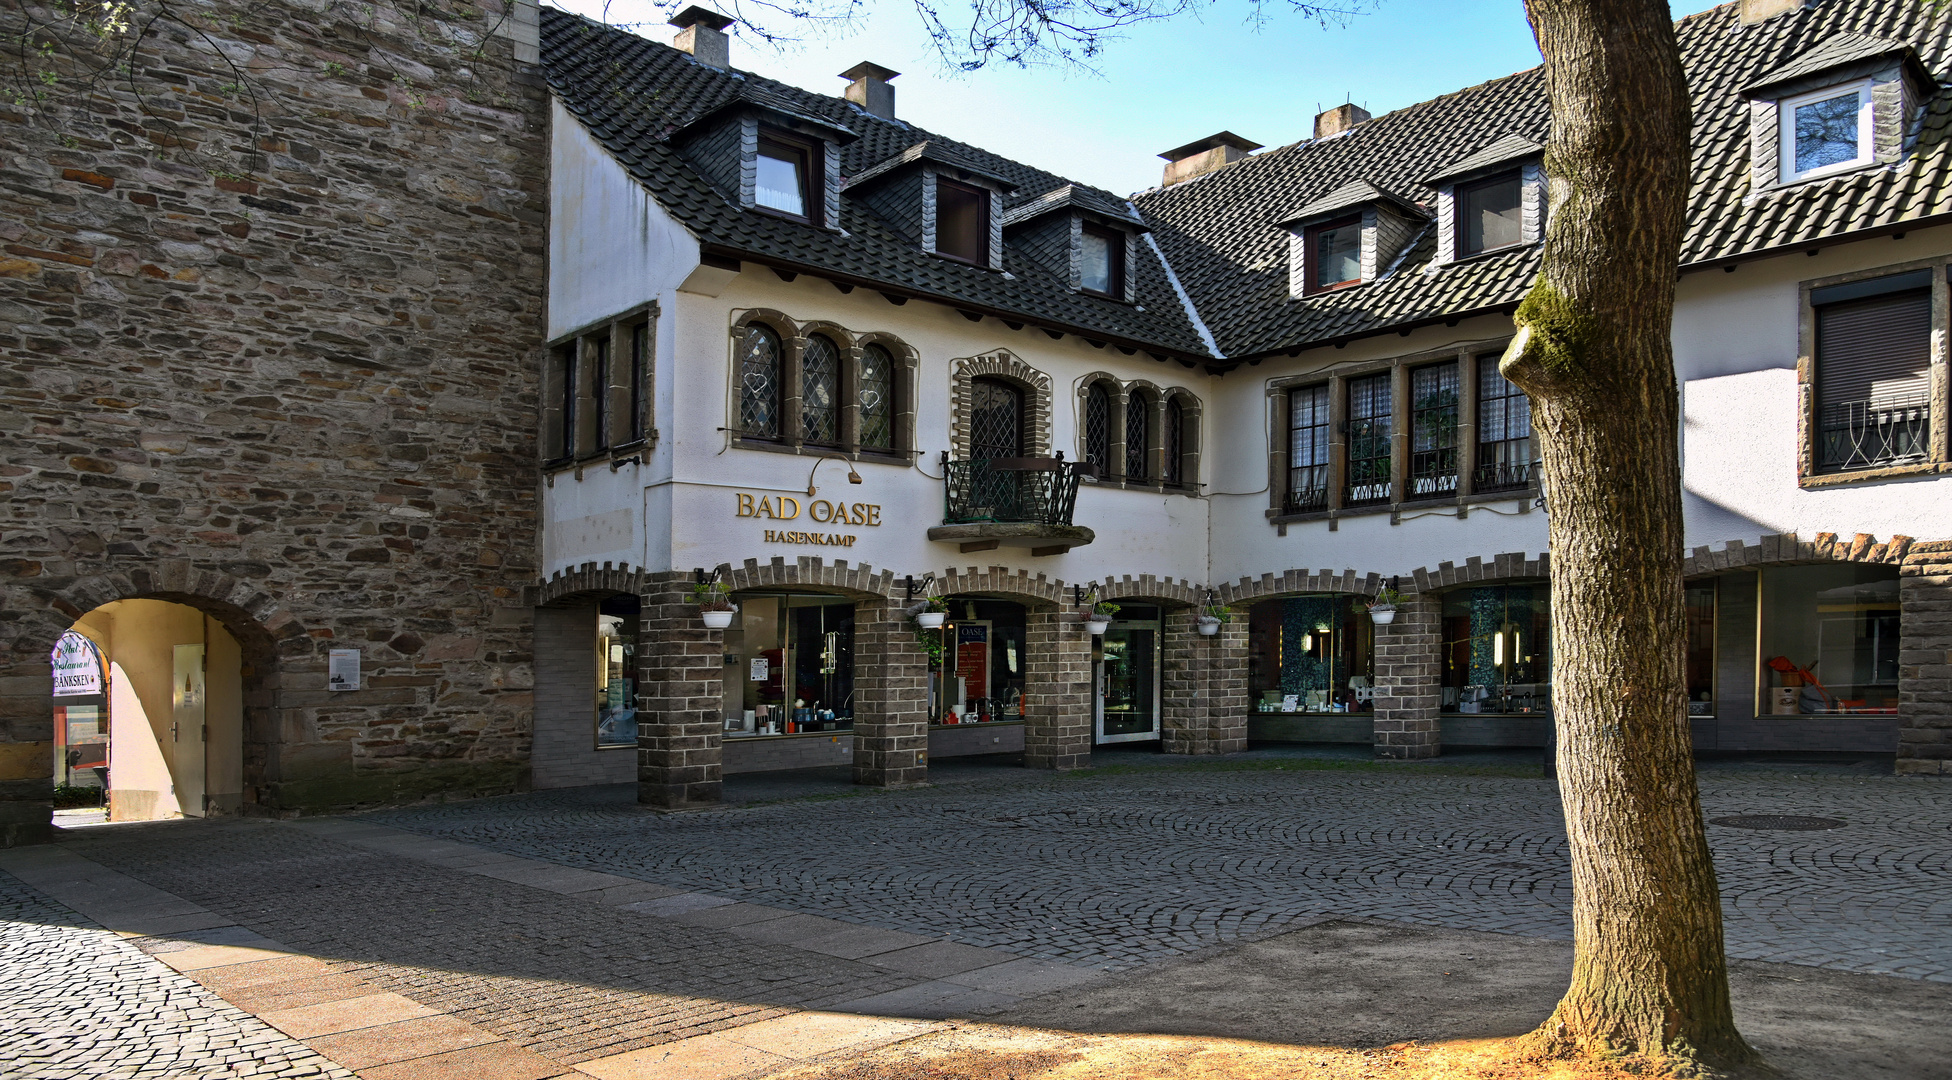 Hattingen Altstadt